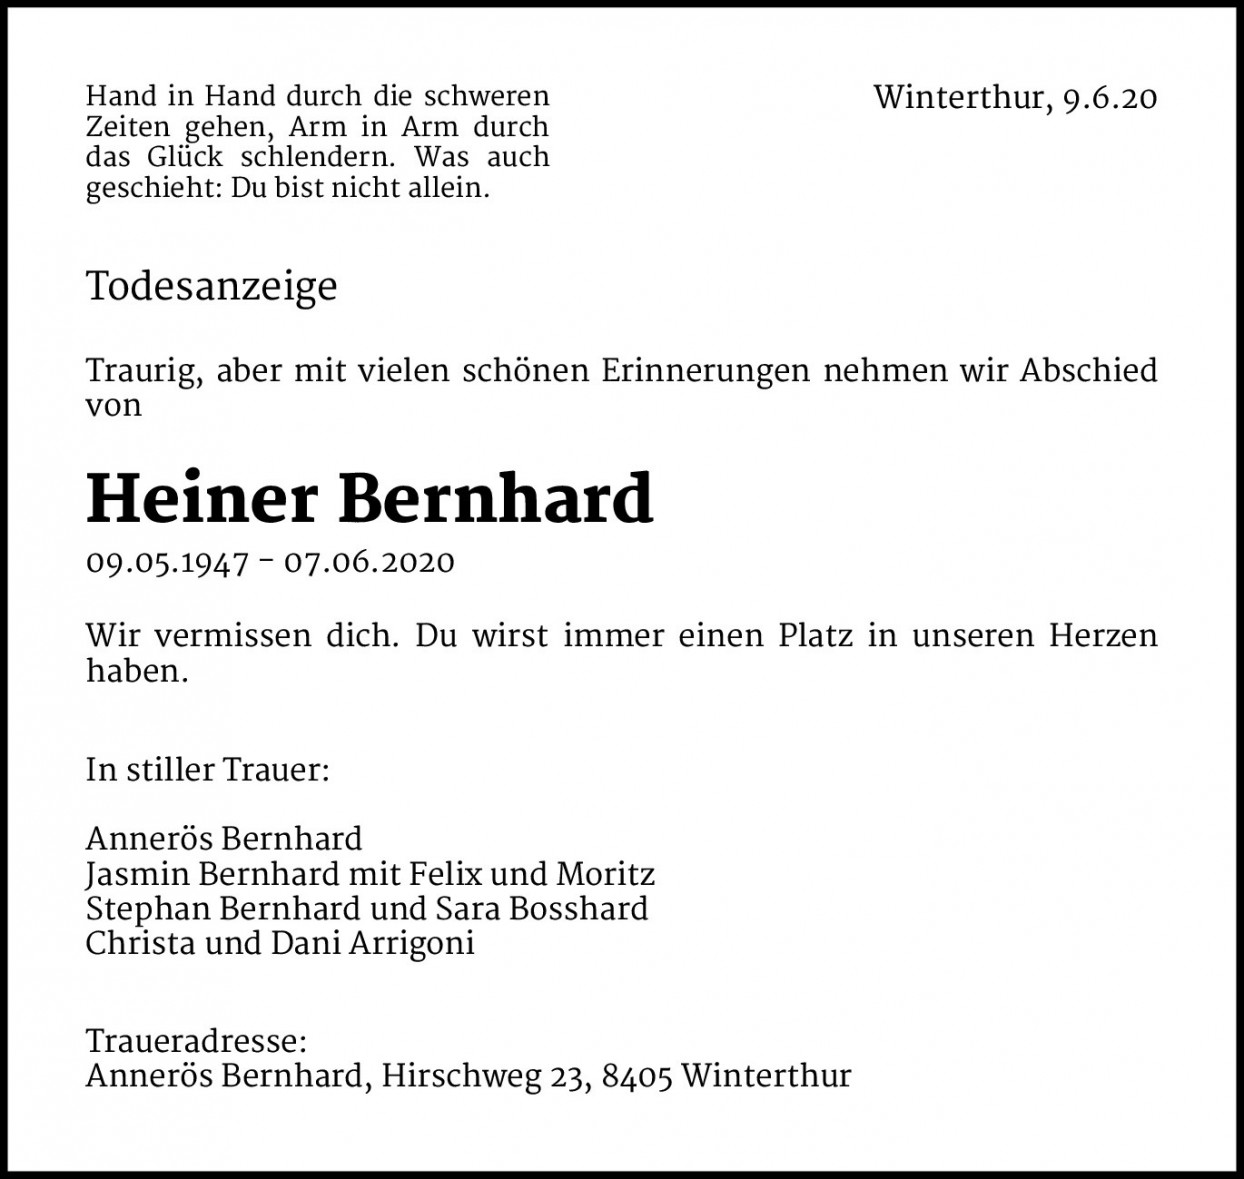 Heiner Bernhard